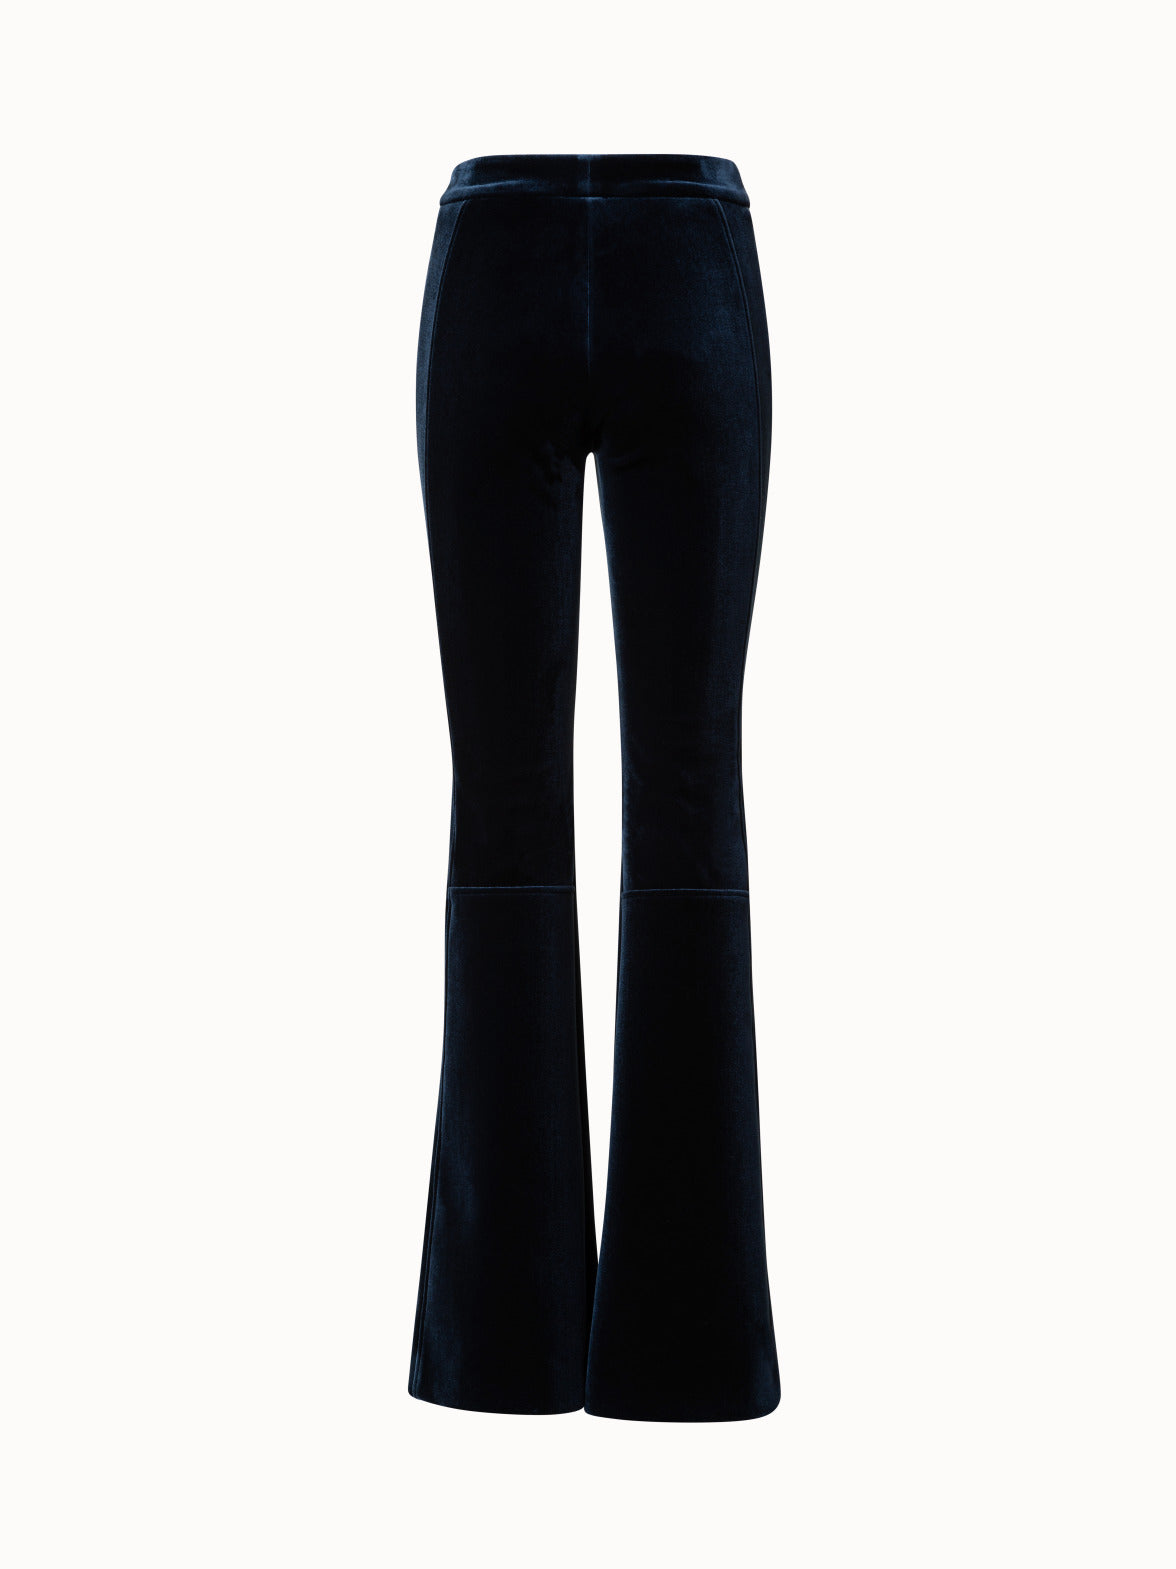 Black Velvet Flare Pants Women's 2023 Autumn High Waisted Elastic